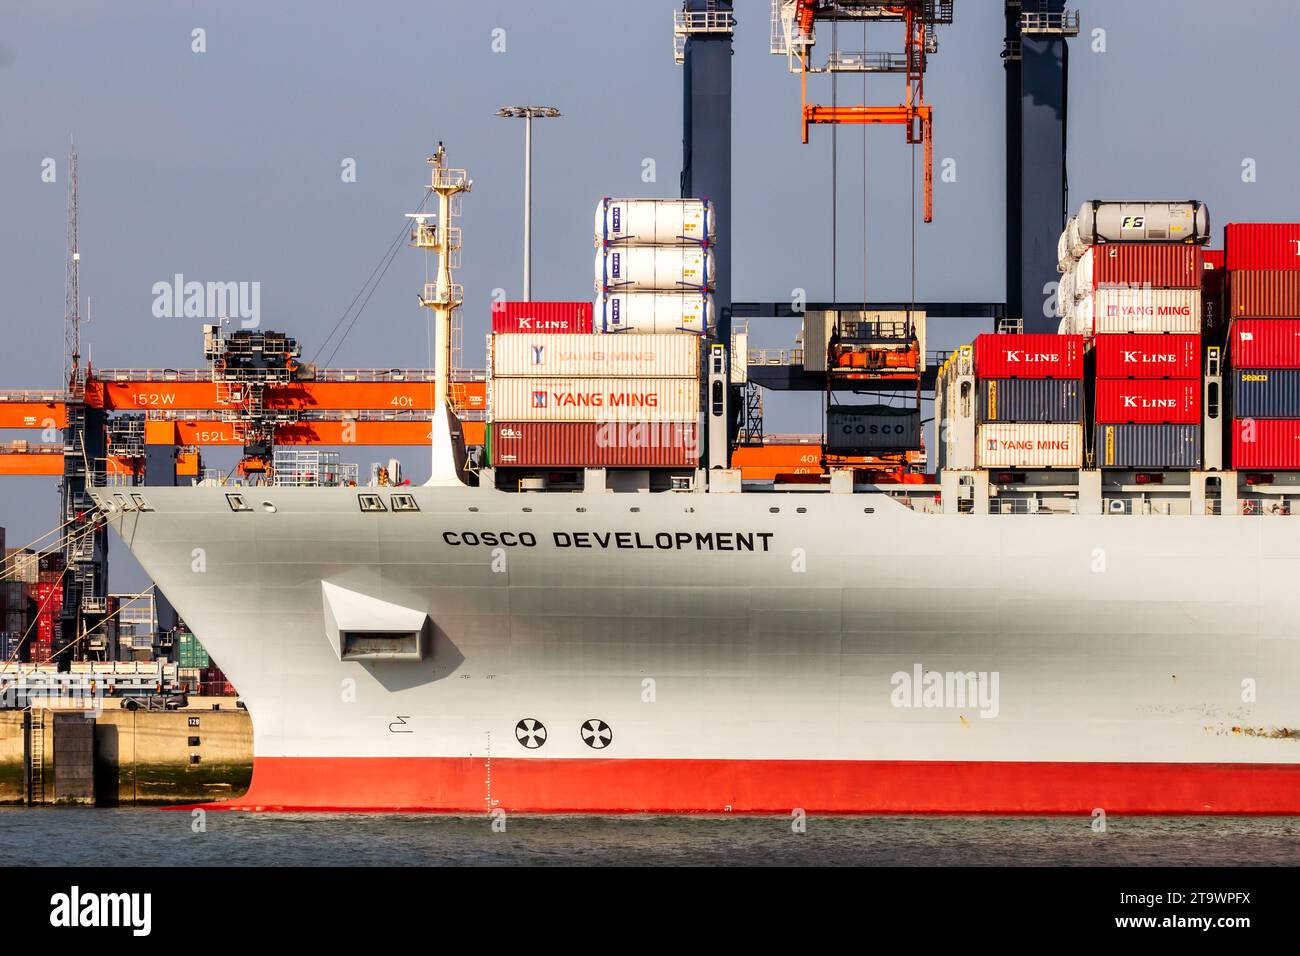 Containerschiff aus Cosco wird mit Portalkranen im ECT Shipping Terminal im Hafen von Rotterdam beladen. Niederlande - 16. März 2016 Stockfoto